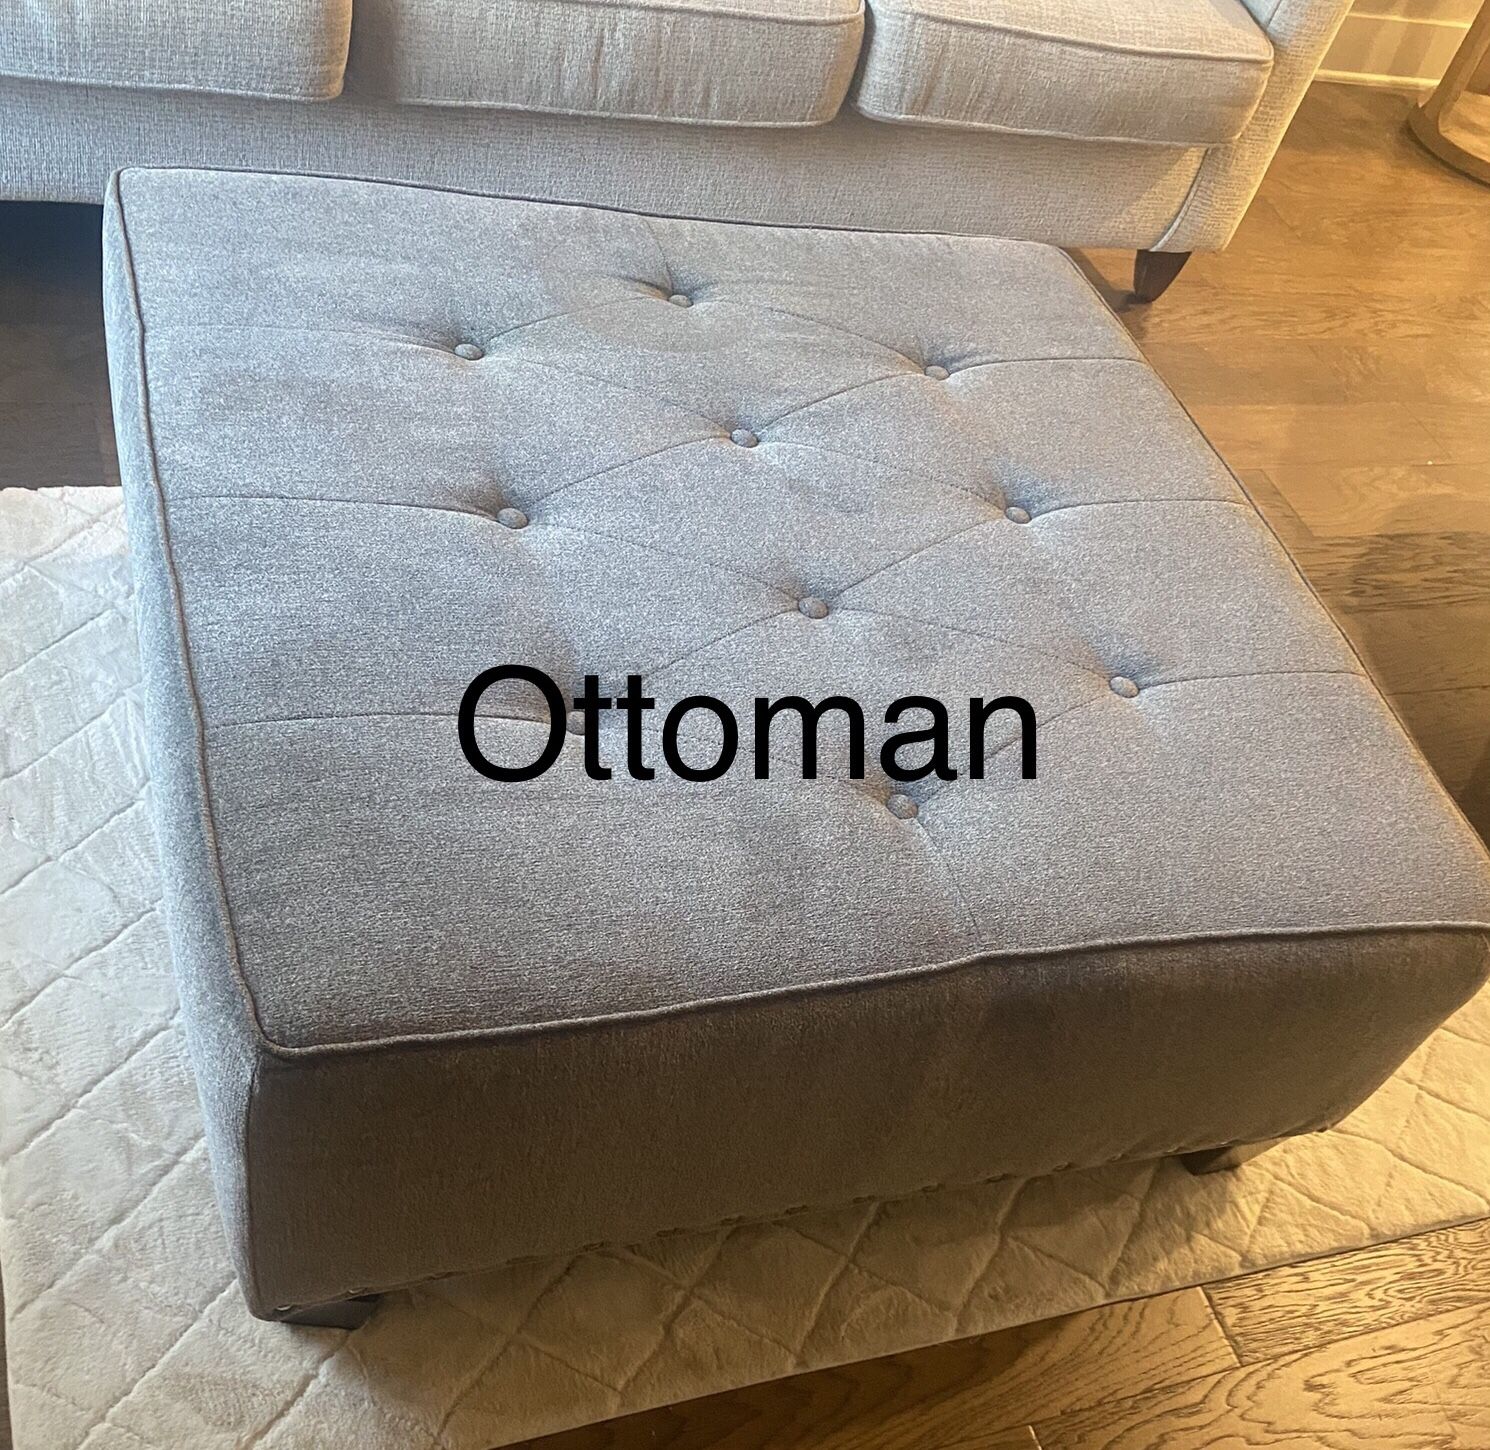 Ottoman 